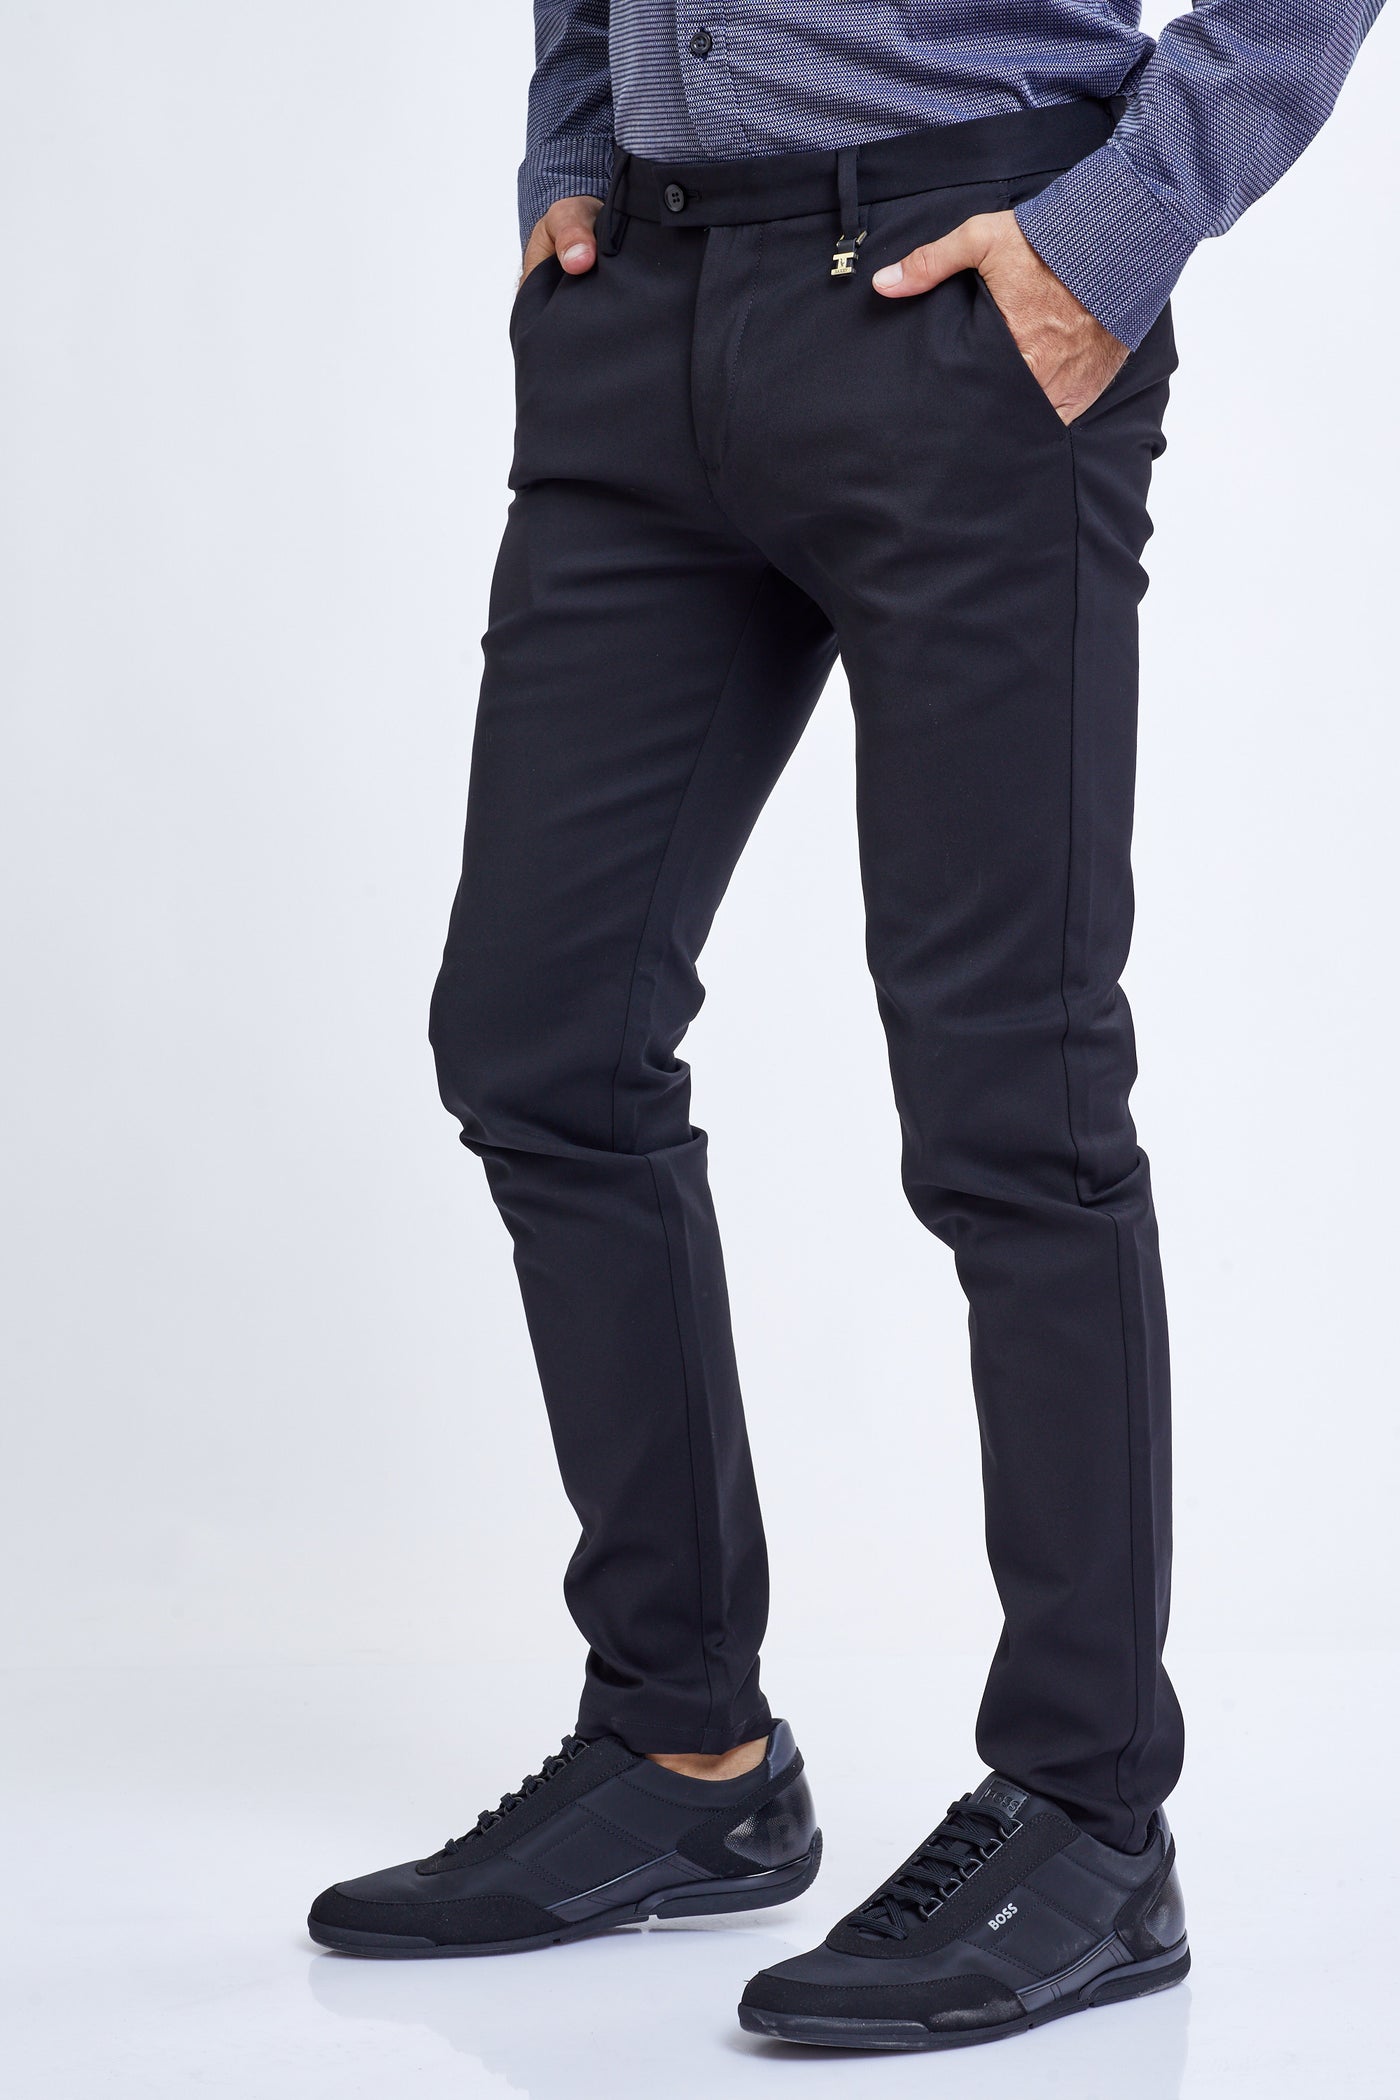 מכנס אוסקר בצבע שחור